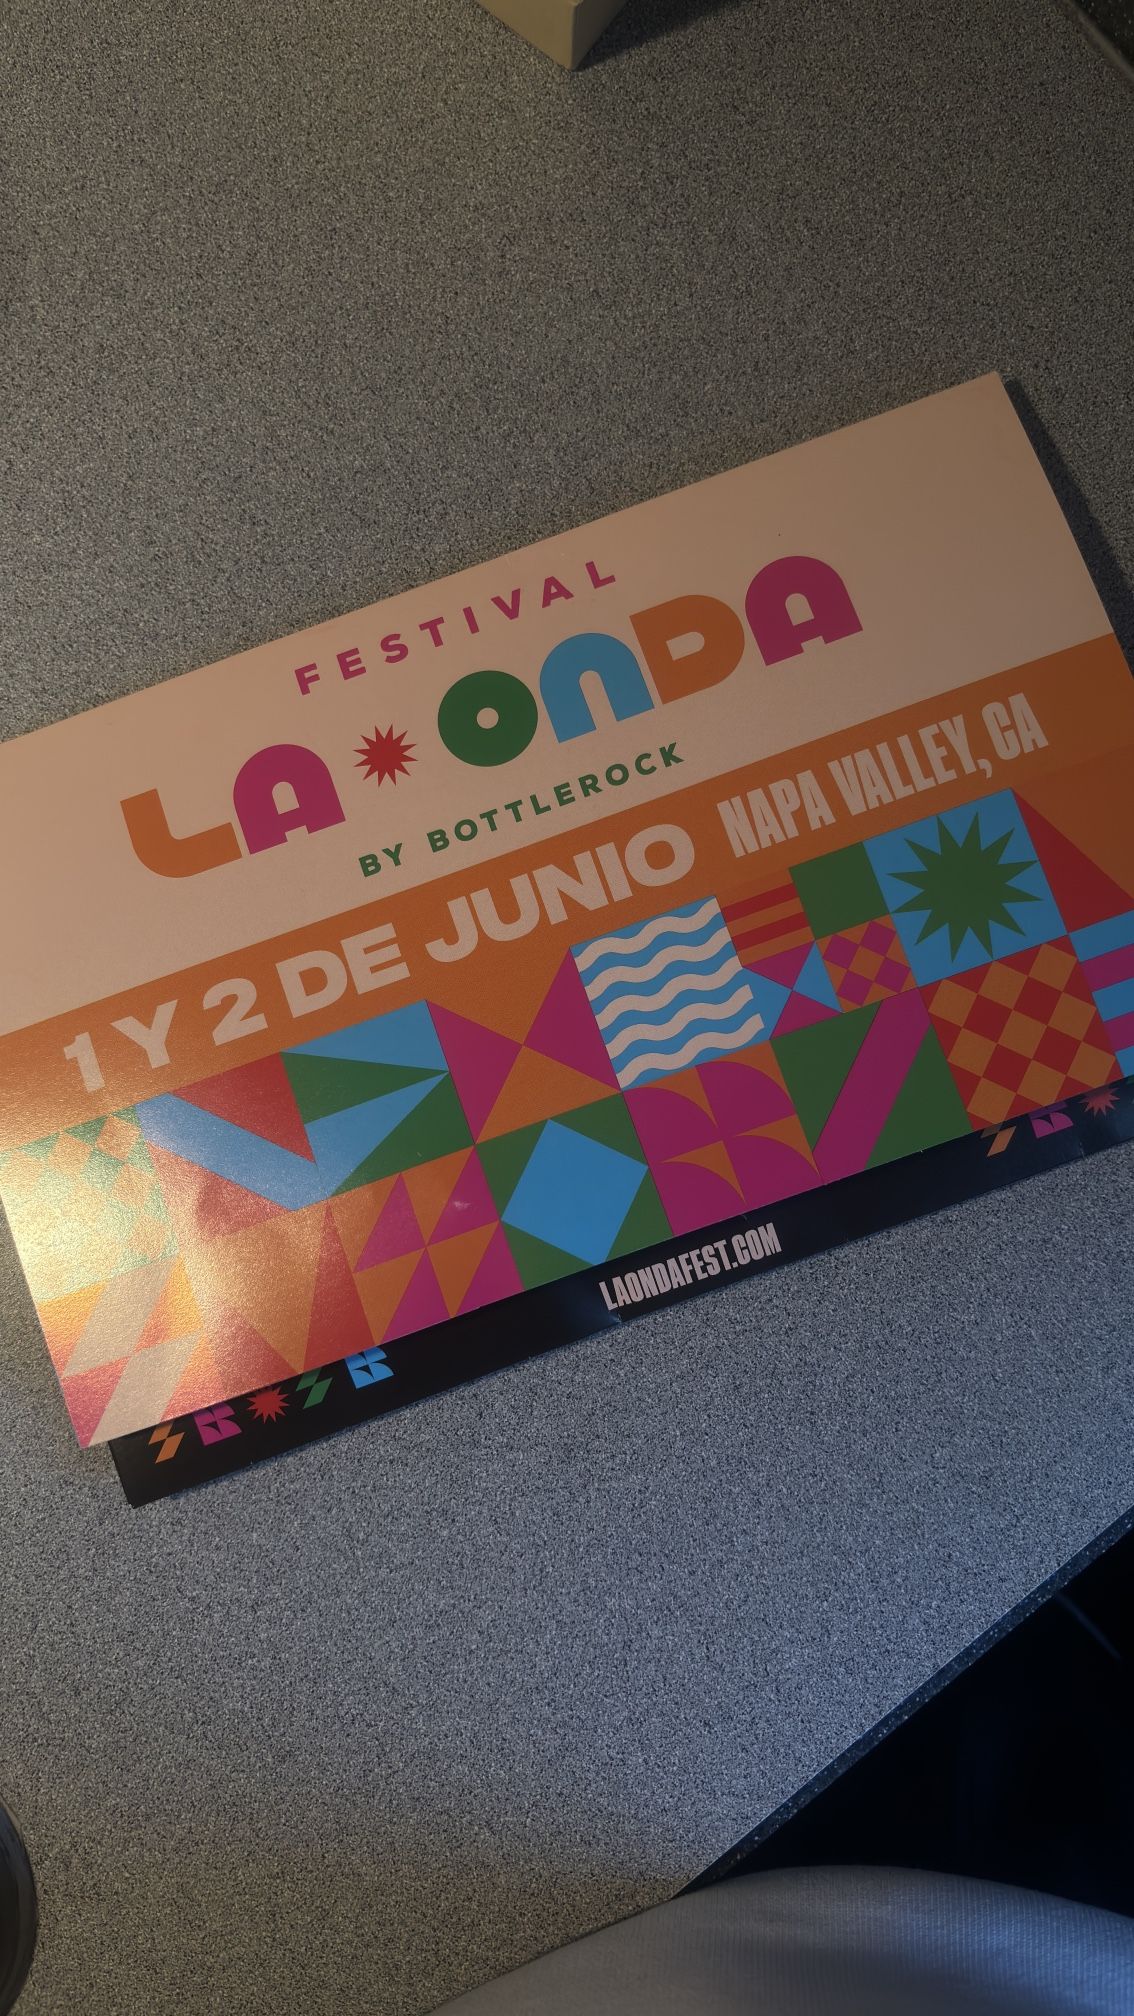 La Onda Festival Tickets 